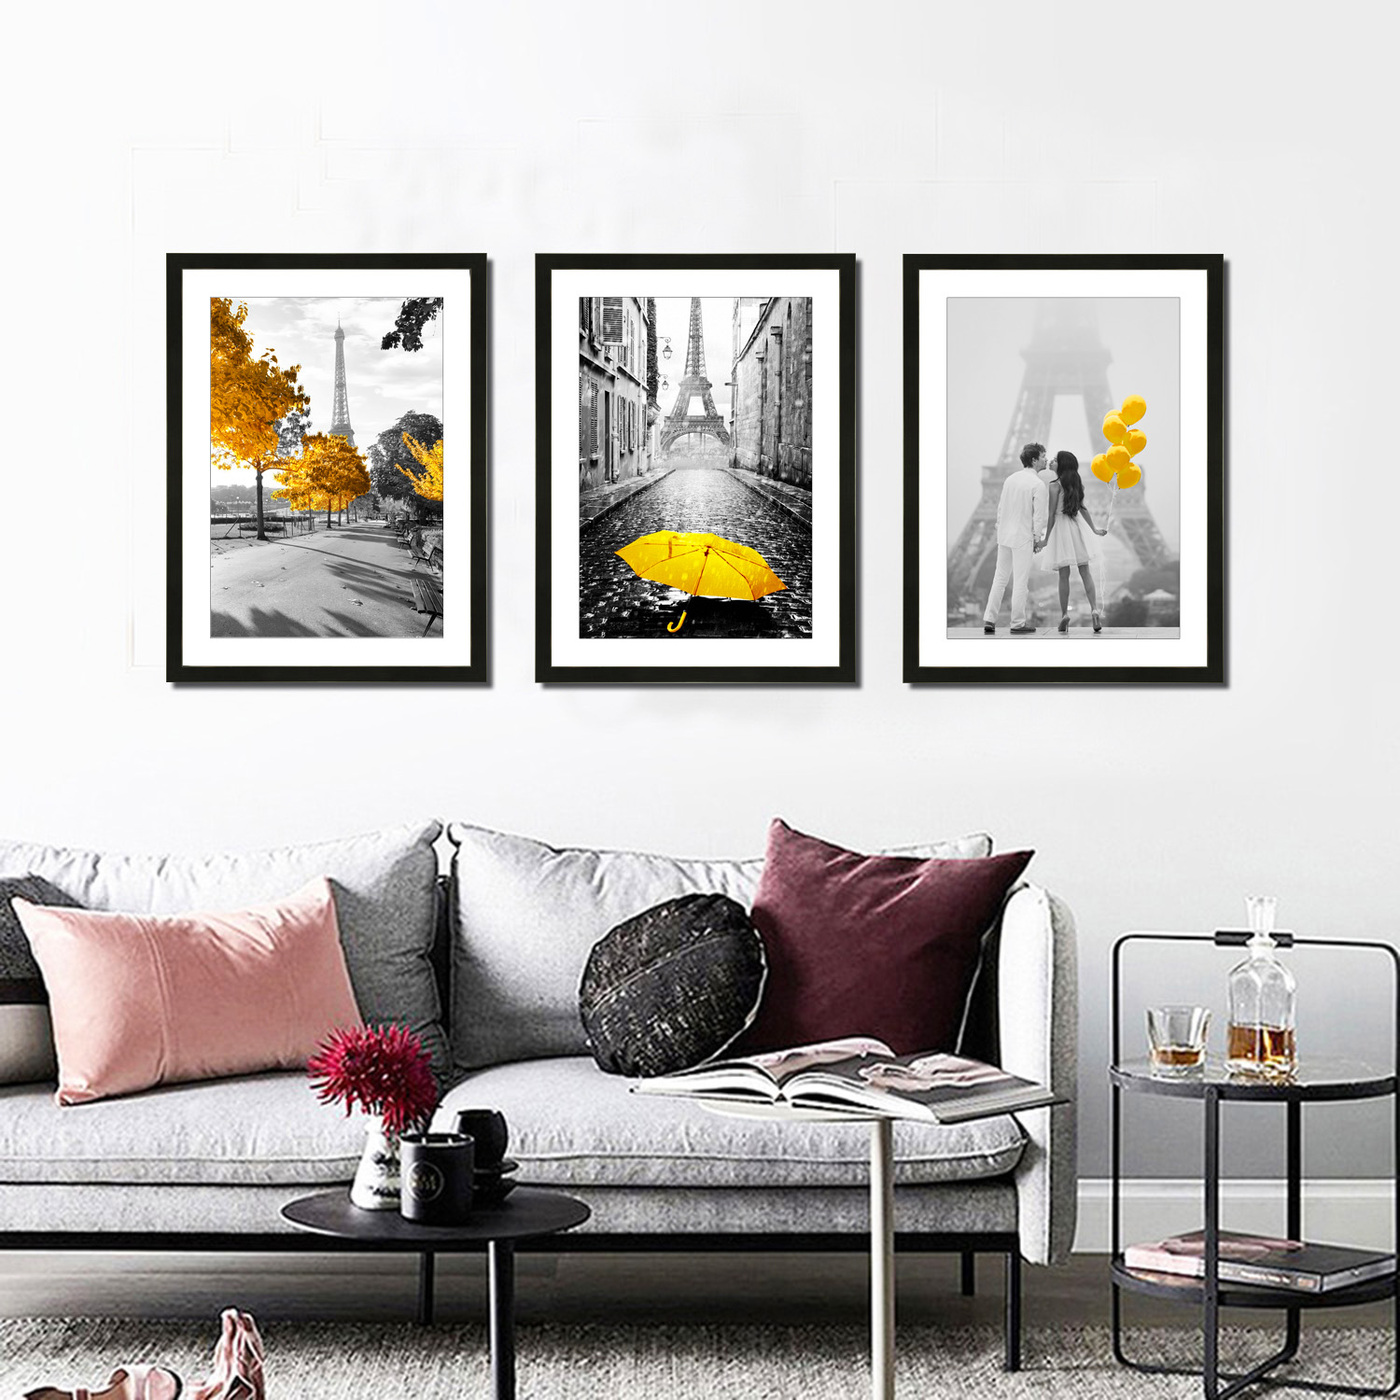 Постеры и картины для интерьера: красивые изображения для дизайна стен различных помещений